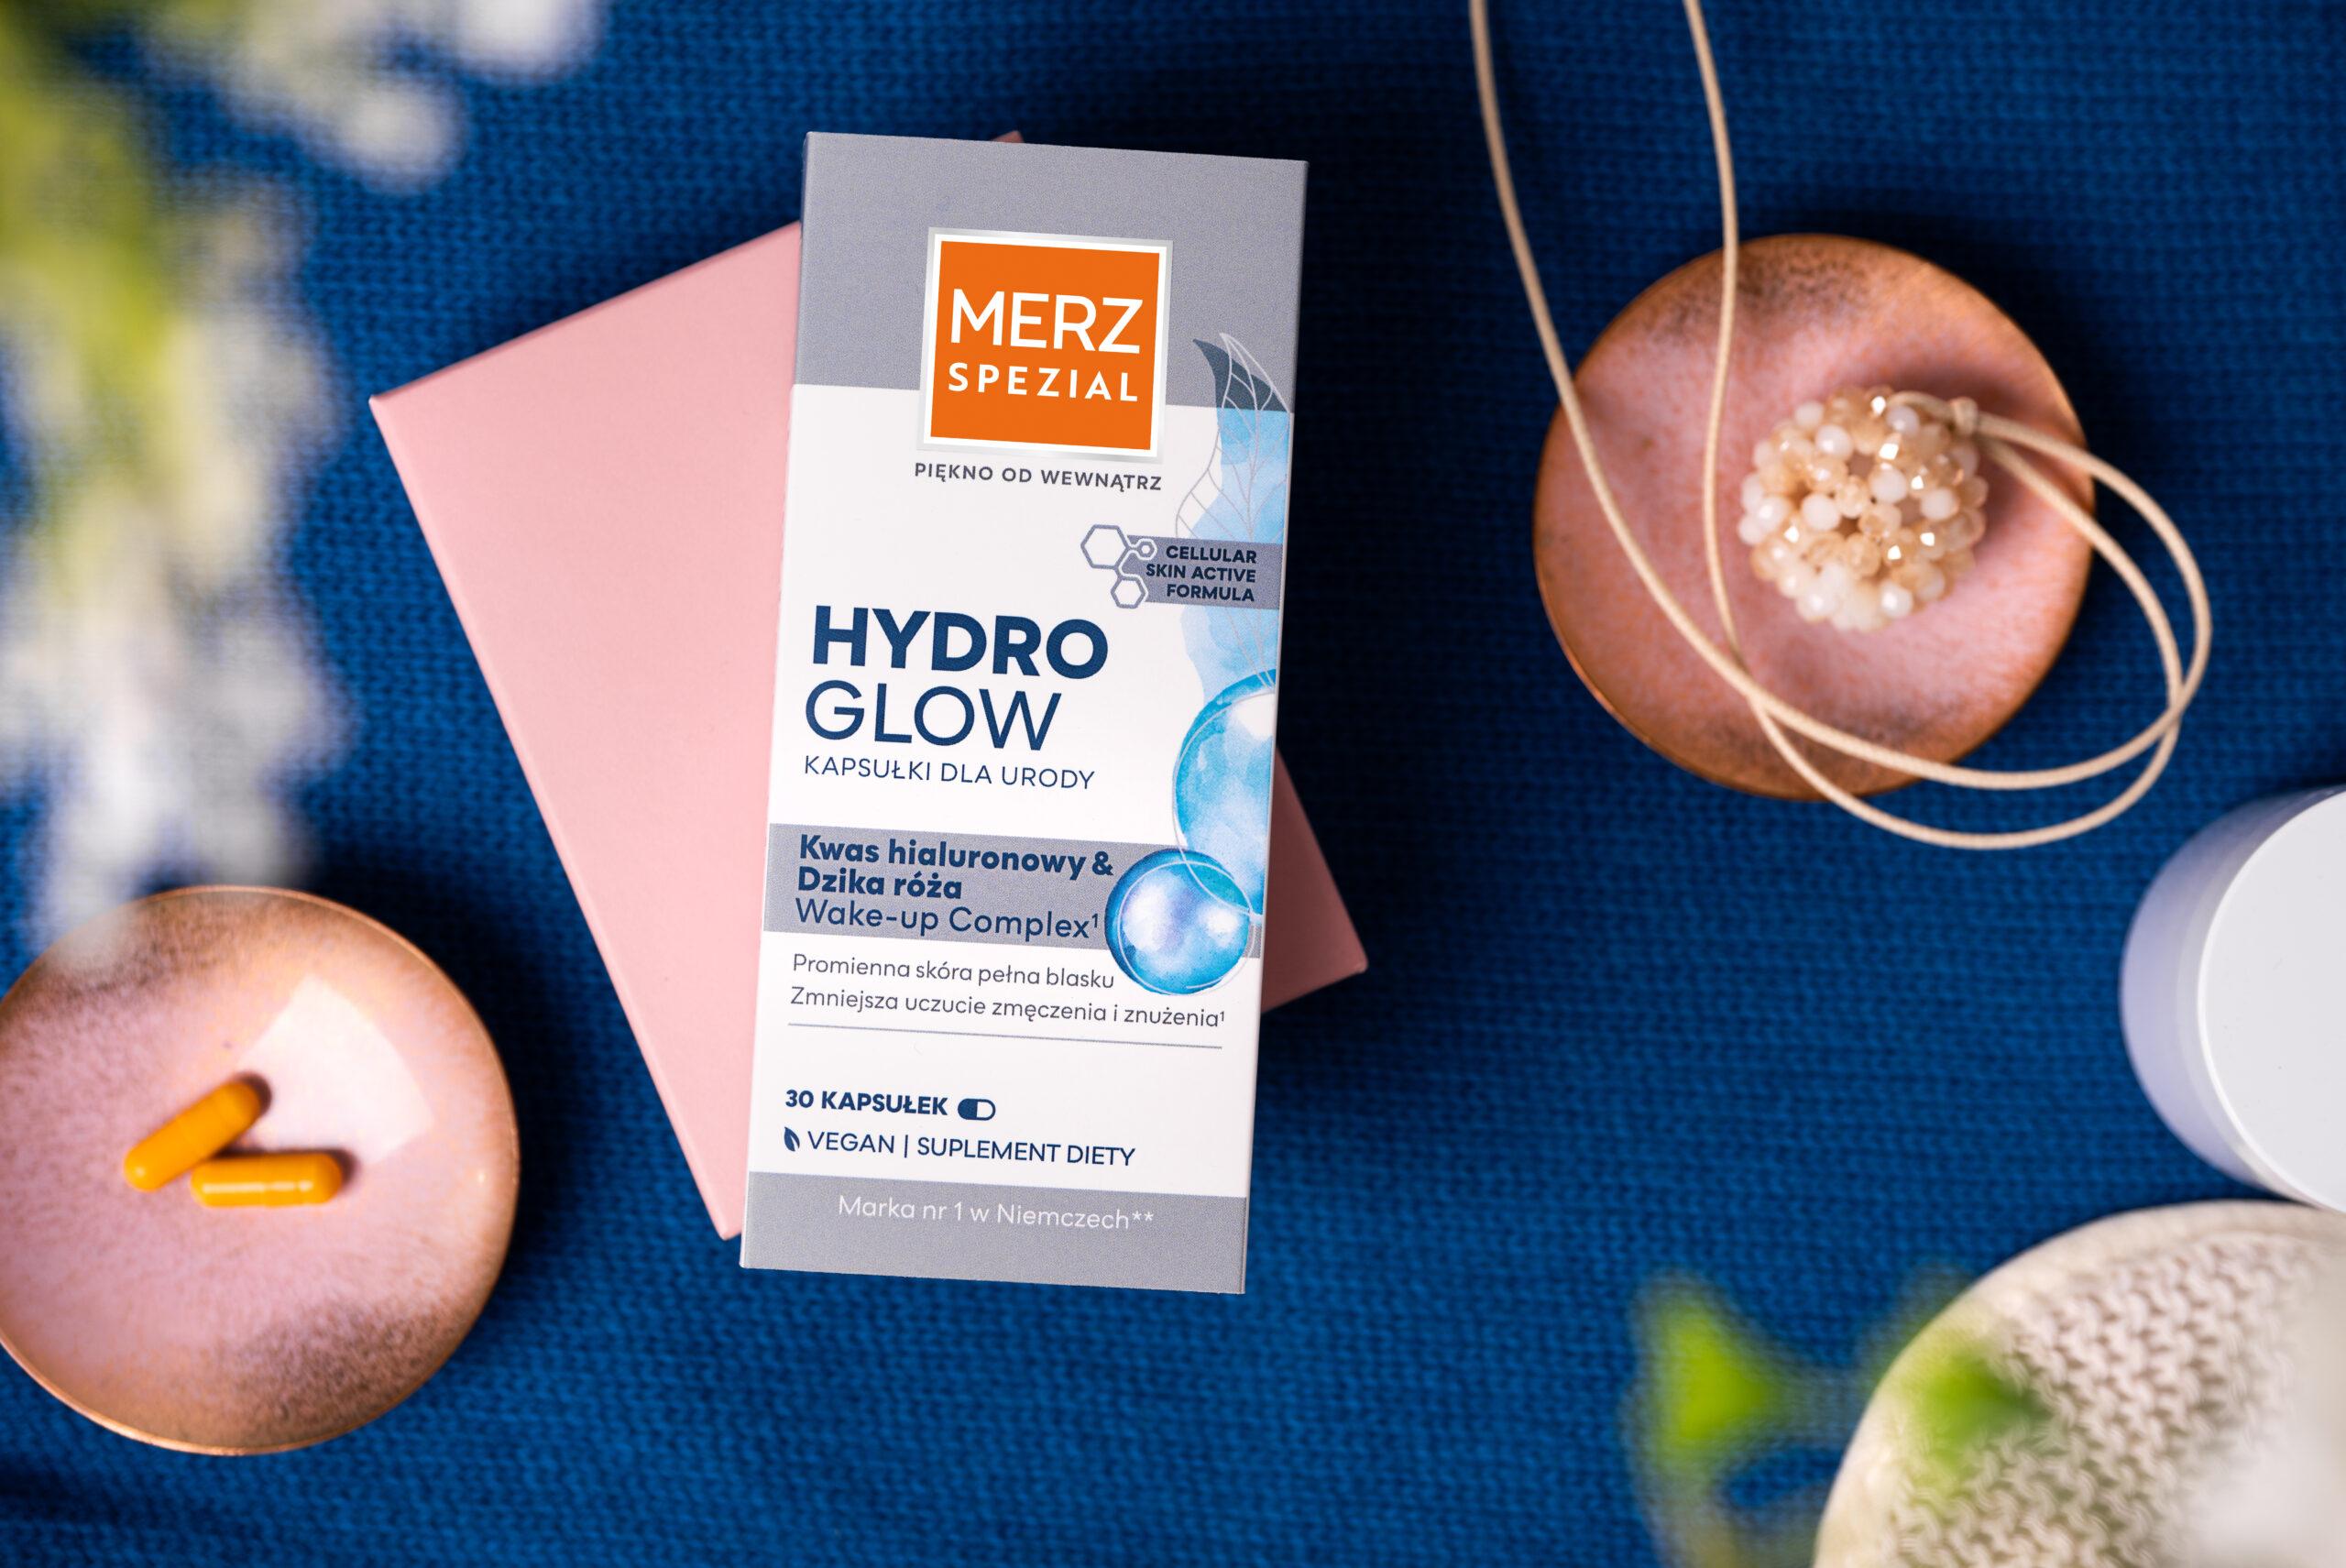 Merz Spezial Hydro Glow kapsułki – Odbudowa i pielęgnacja skóry, włosów i paznokci